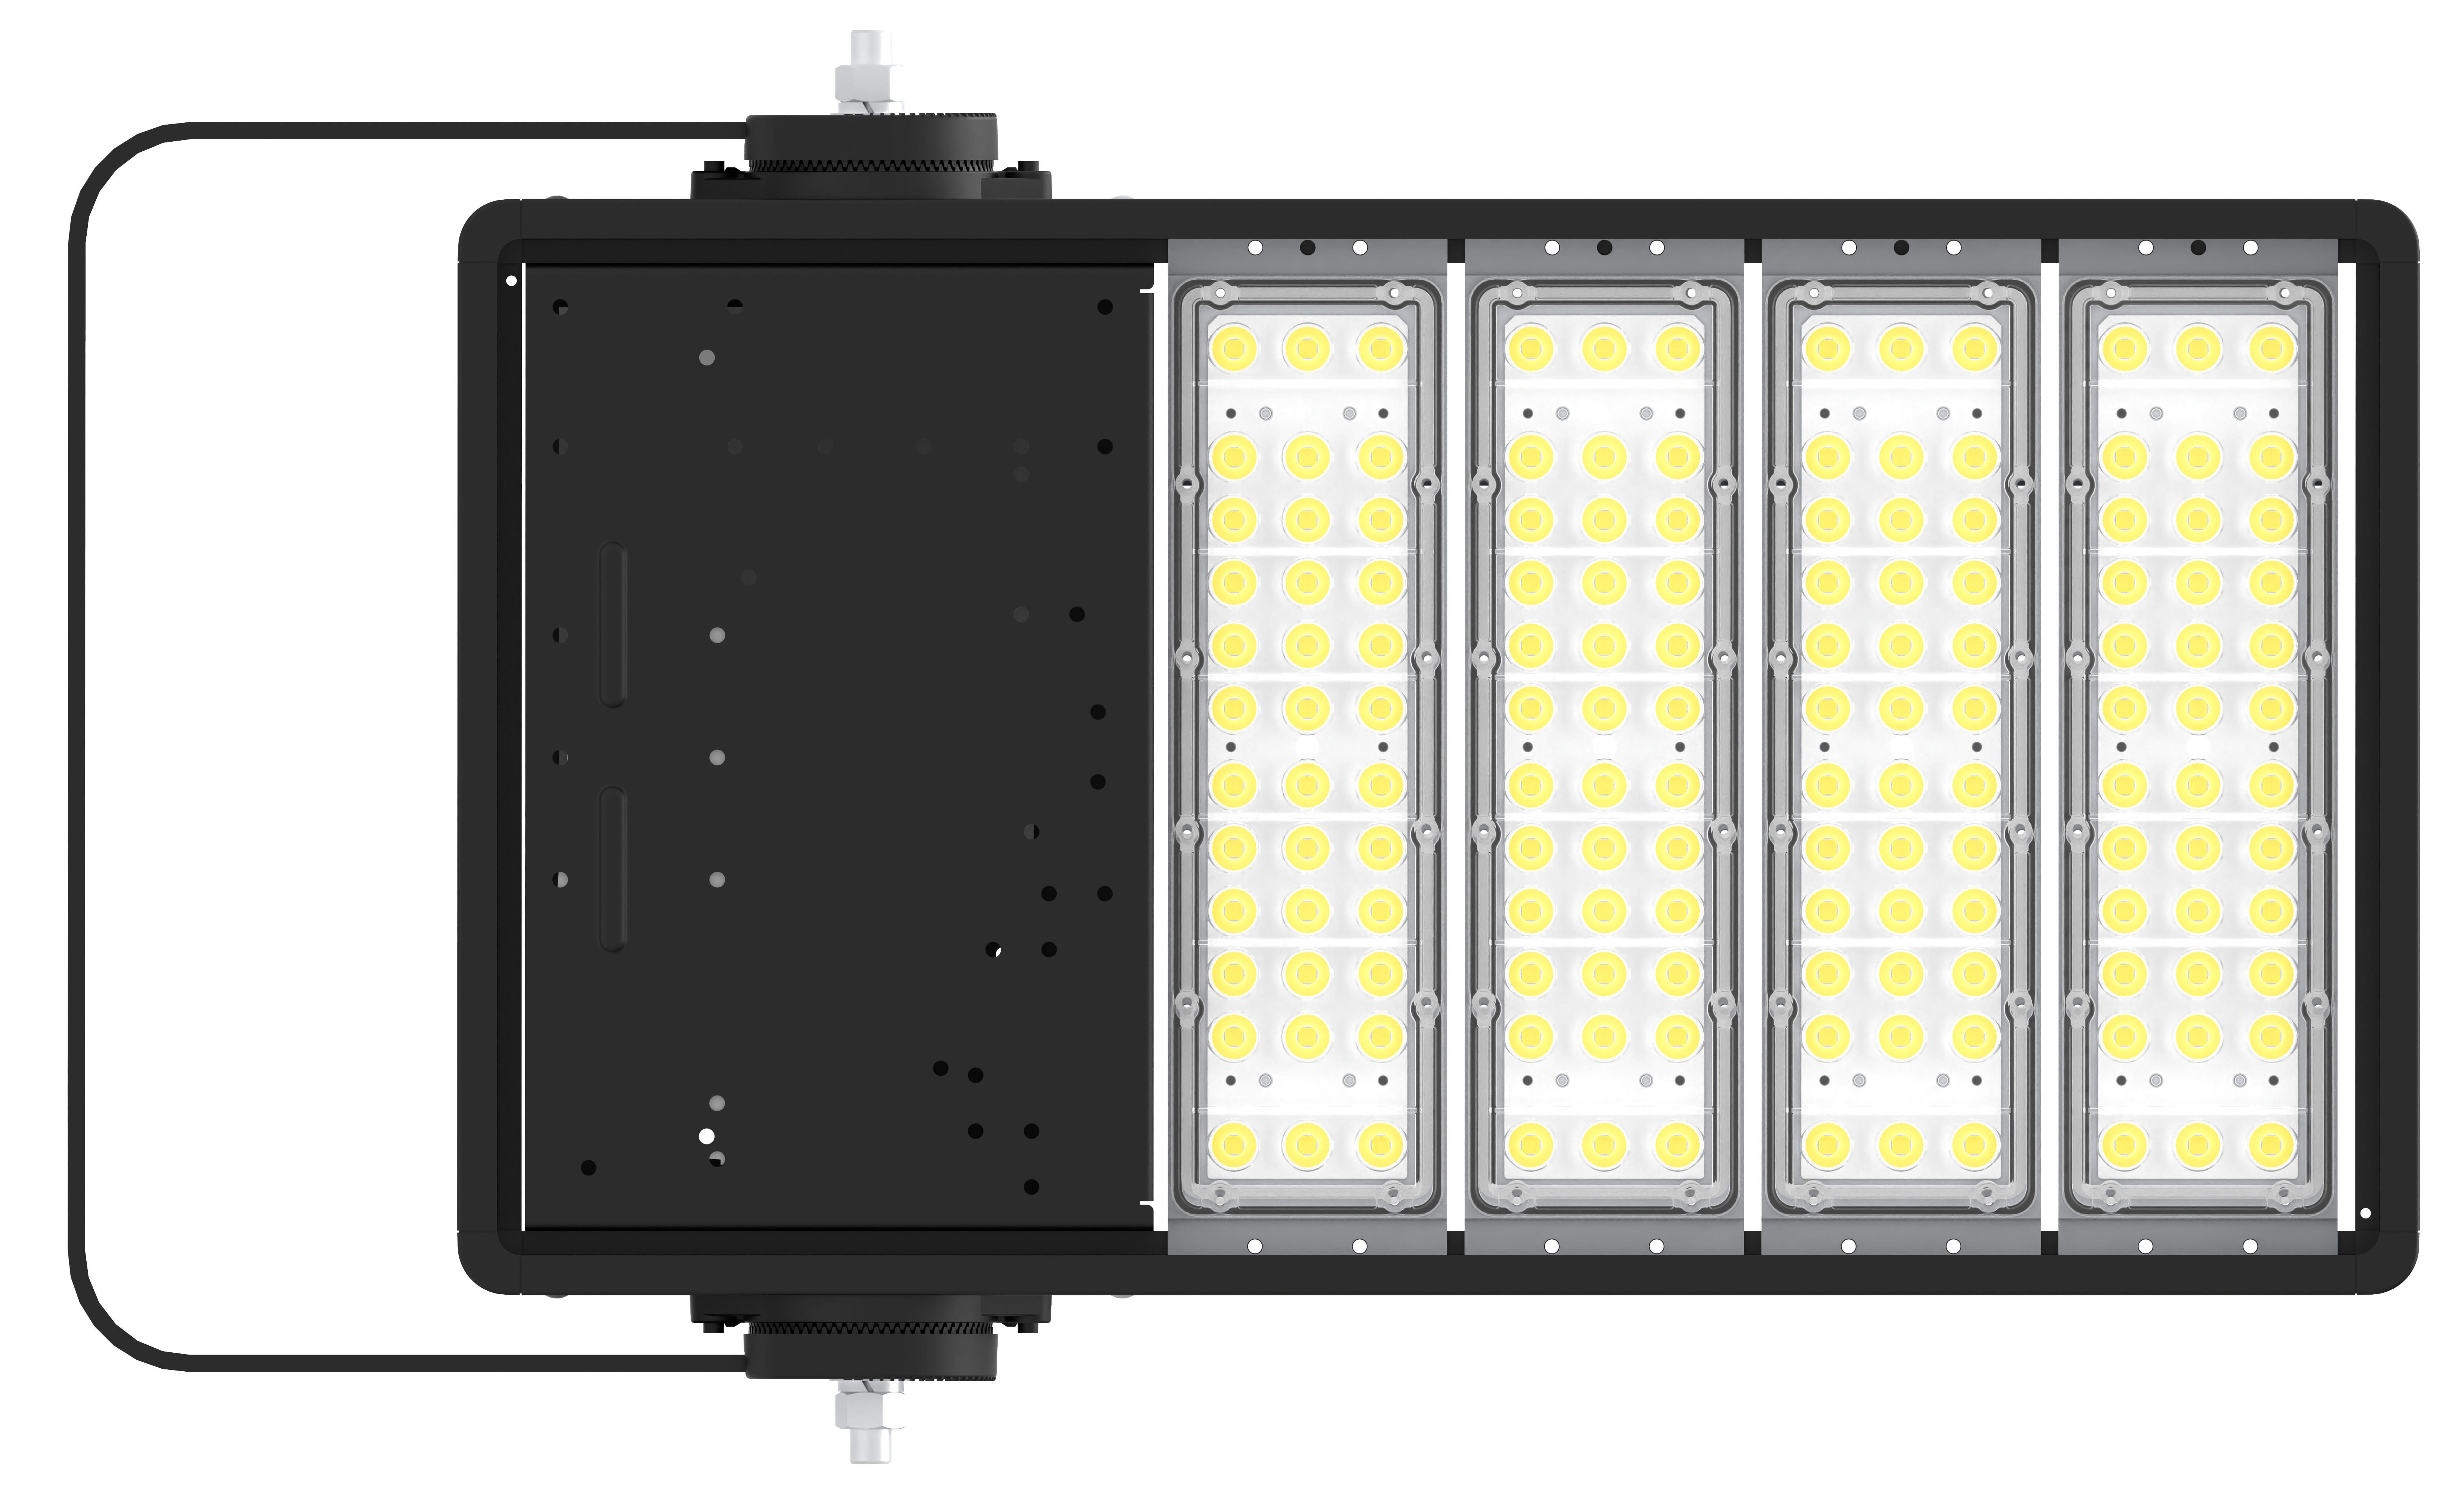 LED-Flutlicht der FC-Serie – vier Module